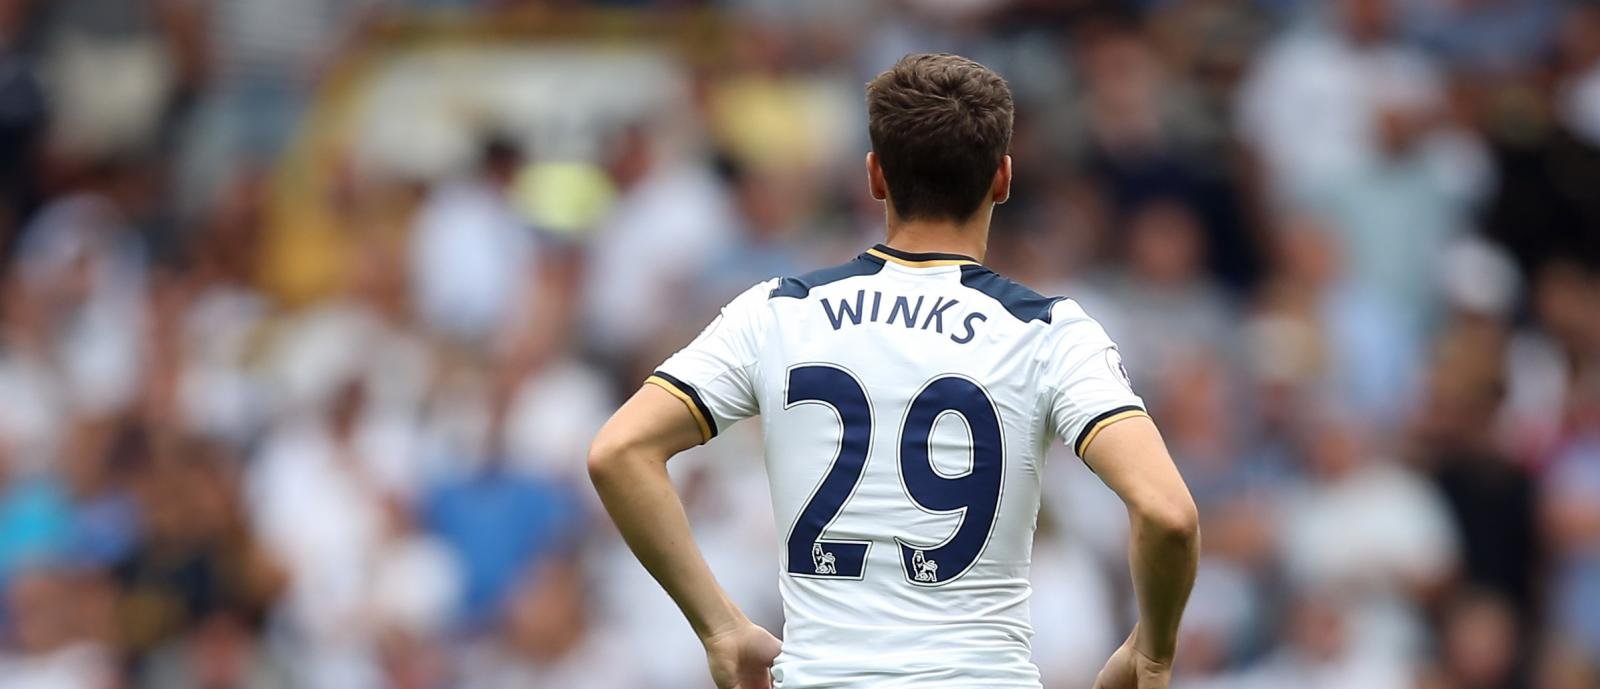 SHOOT for the Stars: Tottenham Hotspur’s Harry Winks